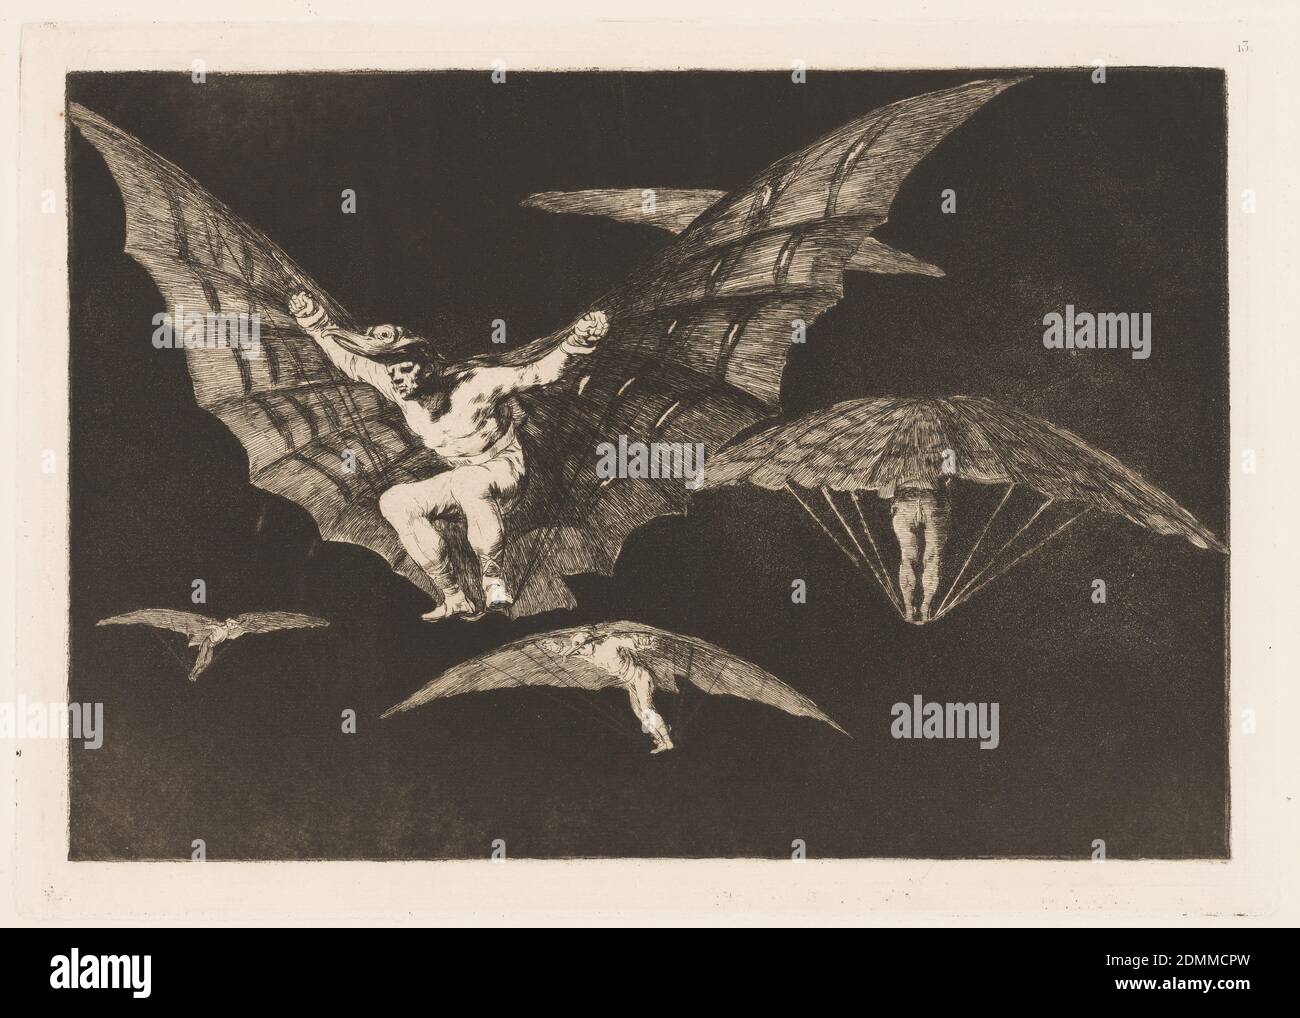 Modo de Volar (A Way of Flying), Platte 13 in Disparates (Sprichwörter), Francisco de Goya y Lucientes, Spanisch, 1746 - 1828, Aquatint und Radierung auf weißem Wove-Papier, Mehrfachansichten eines Mannes, der an einem geflügelten Fluggerät mit dem Kopf eines Vogels befestigt ist. Jede Ansicht zeigt den Benutzer und das Gerät aus einem anderen Winkel und der Art der Flugbewegung., Spanien, 1865–66, Modelle und Prototypen, Print Stockfoto